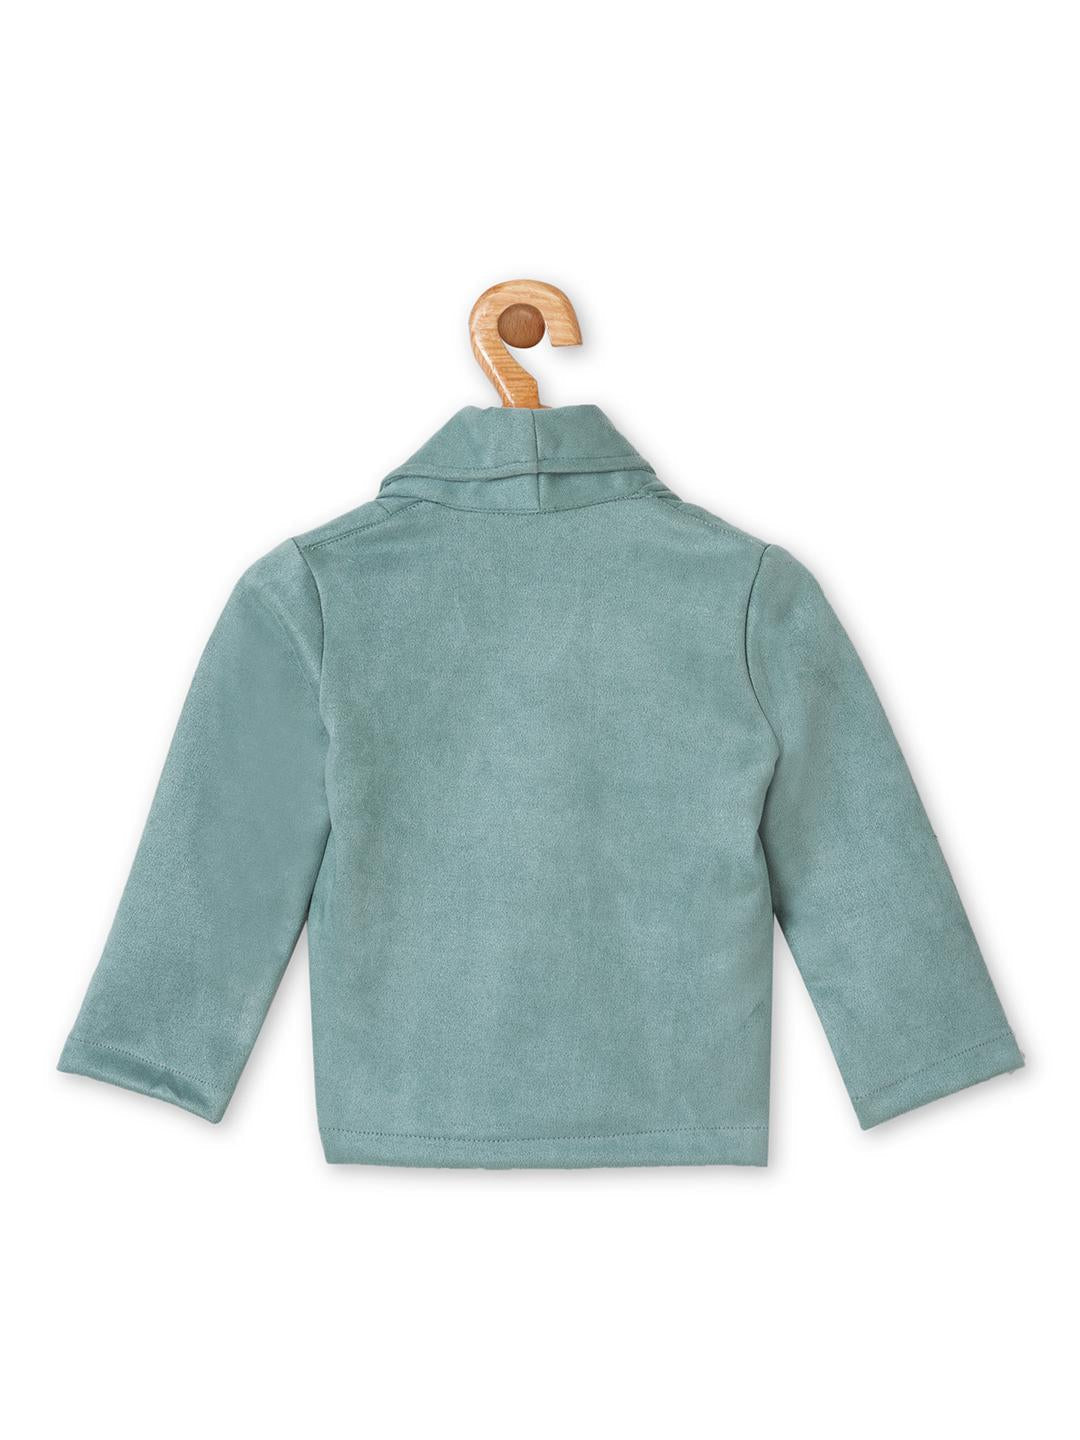 cadet-blue-suede-jacket-10510090BL, Kids Clothing, Polyester Girl Dress